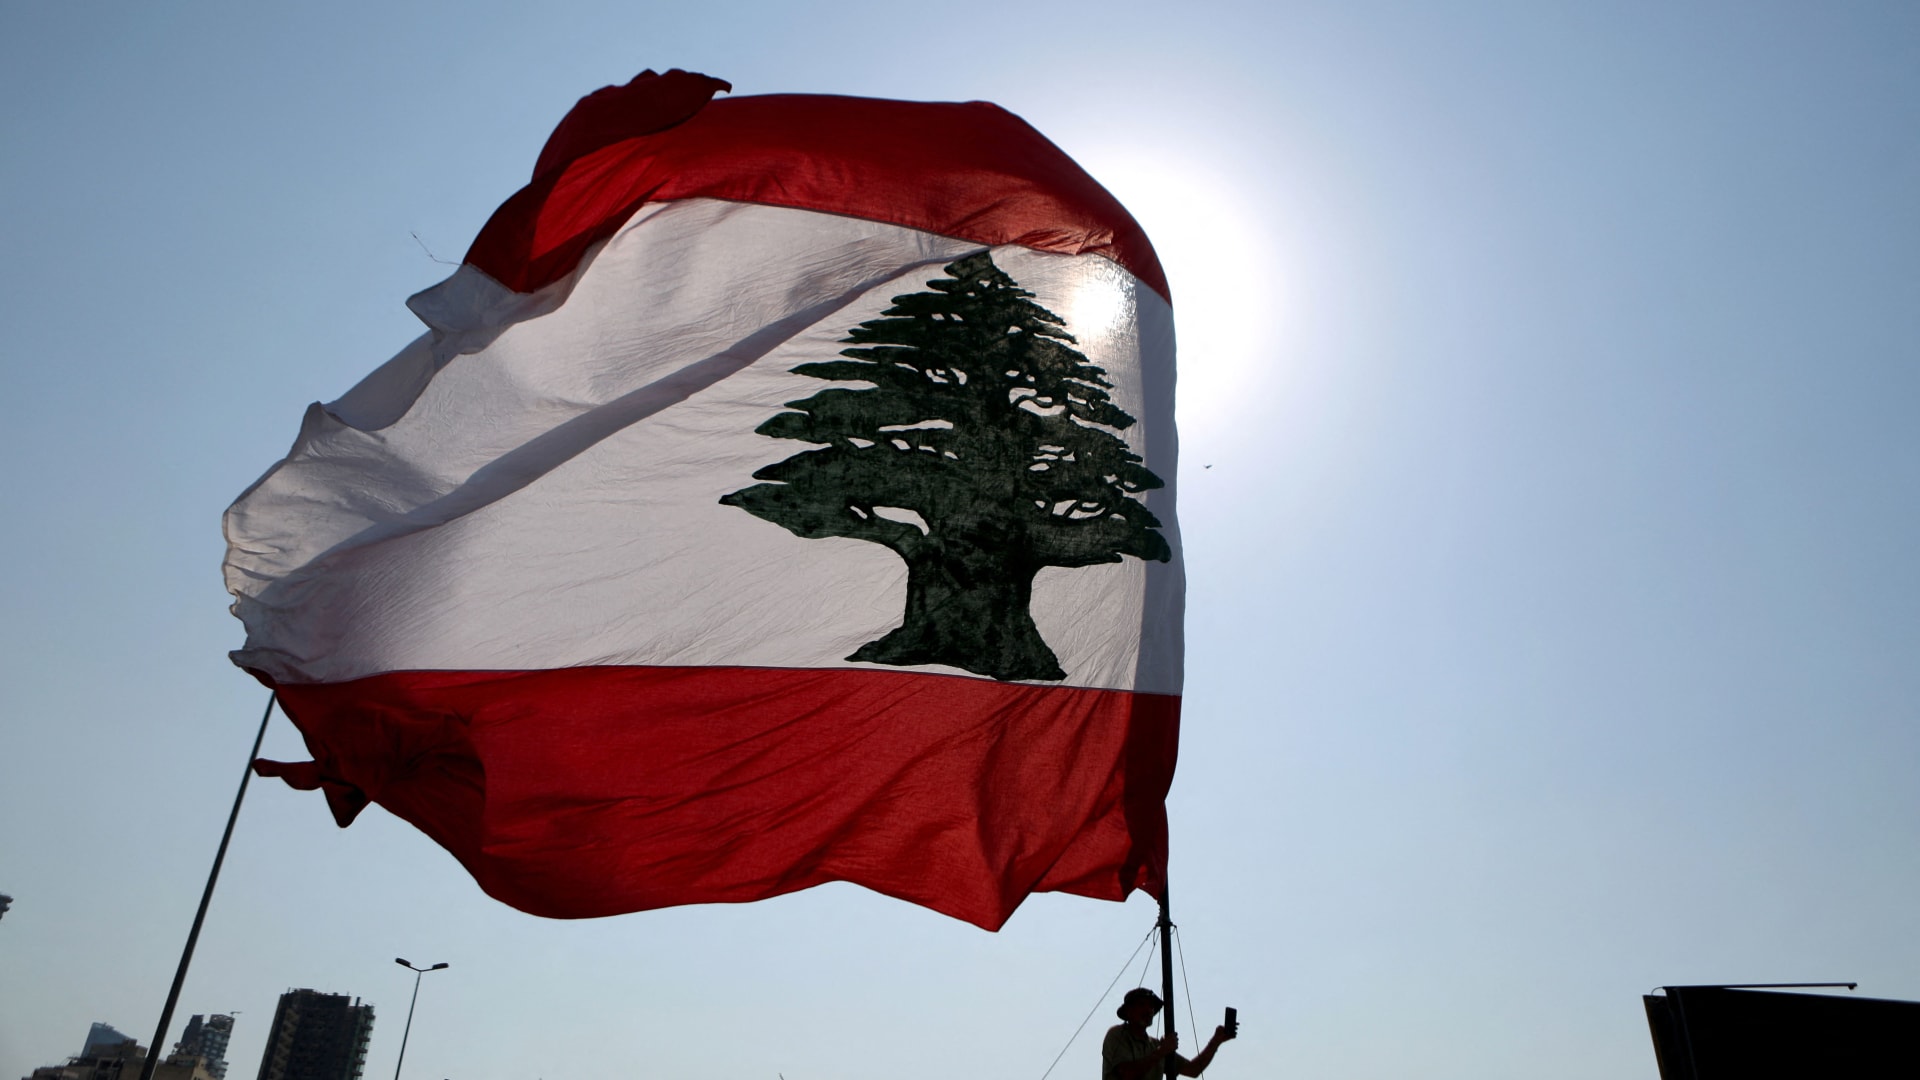 البنك الدولي: نخبة لبنان تسببوا عمدًا في انهياره الاقتصادي ثالث أكبر أزمة منذ القرن الـ19